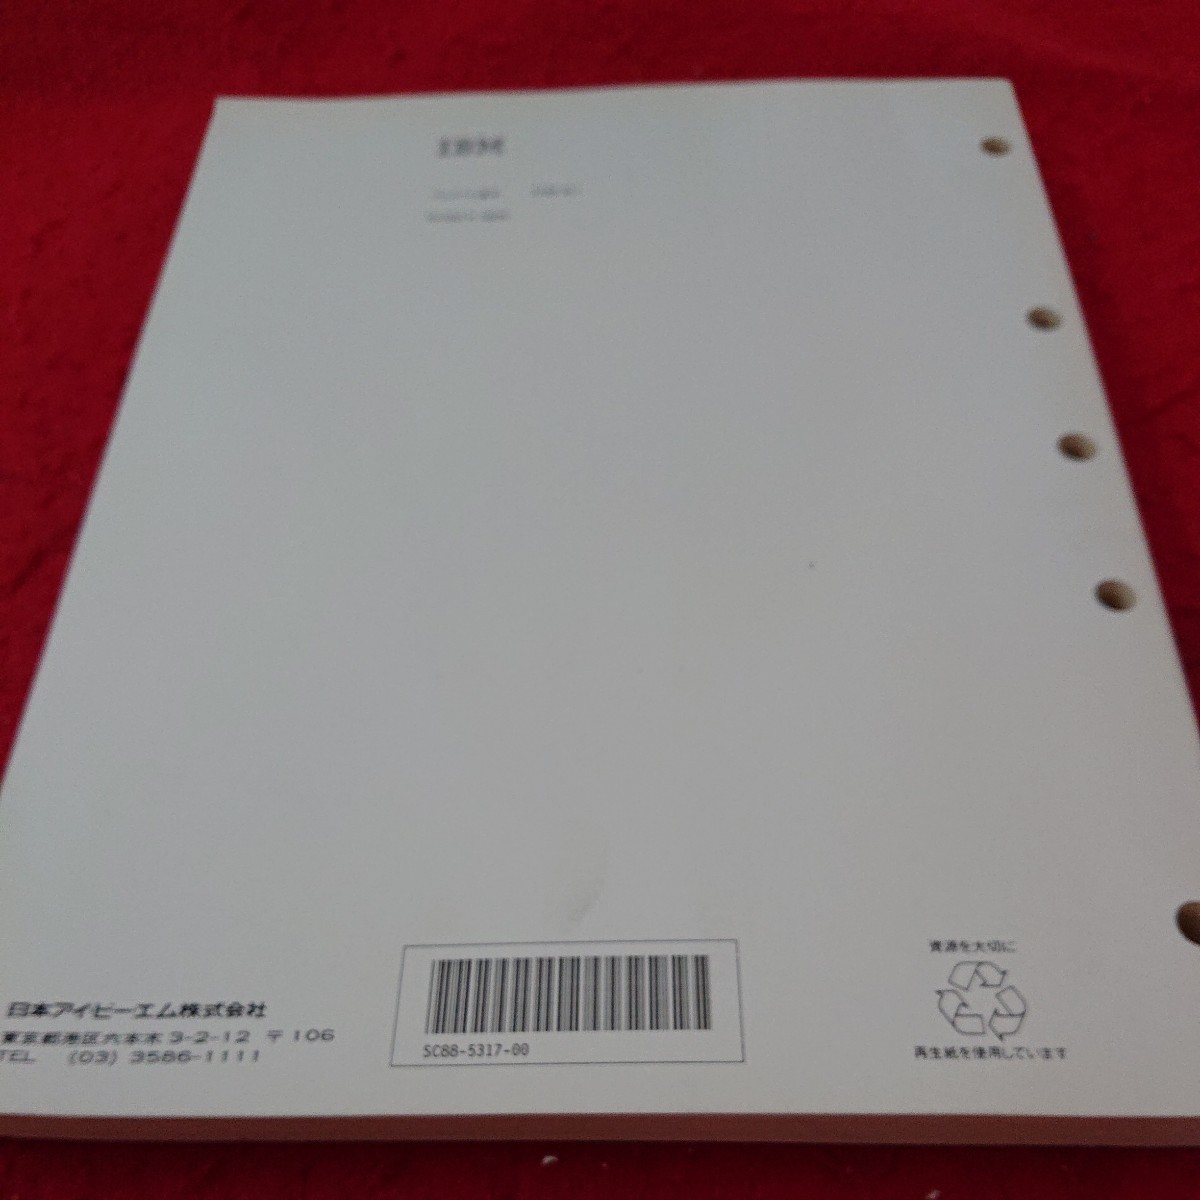 e-322 クライアント・アクセス/400(DOS) 使用者の手引き バージョン3 日本IBM 発行日不明※6 _傷、汚れあり